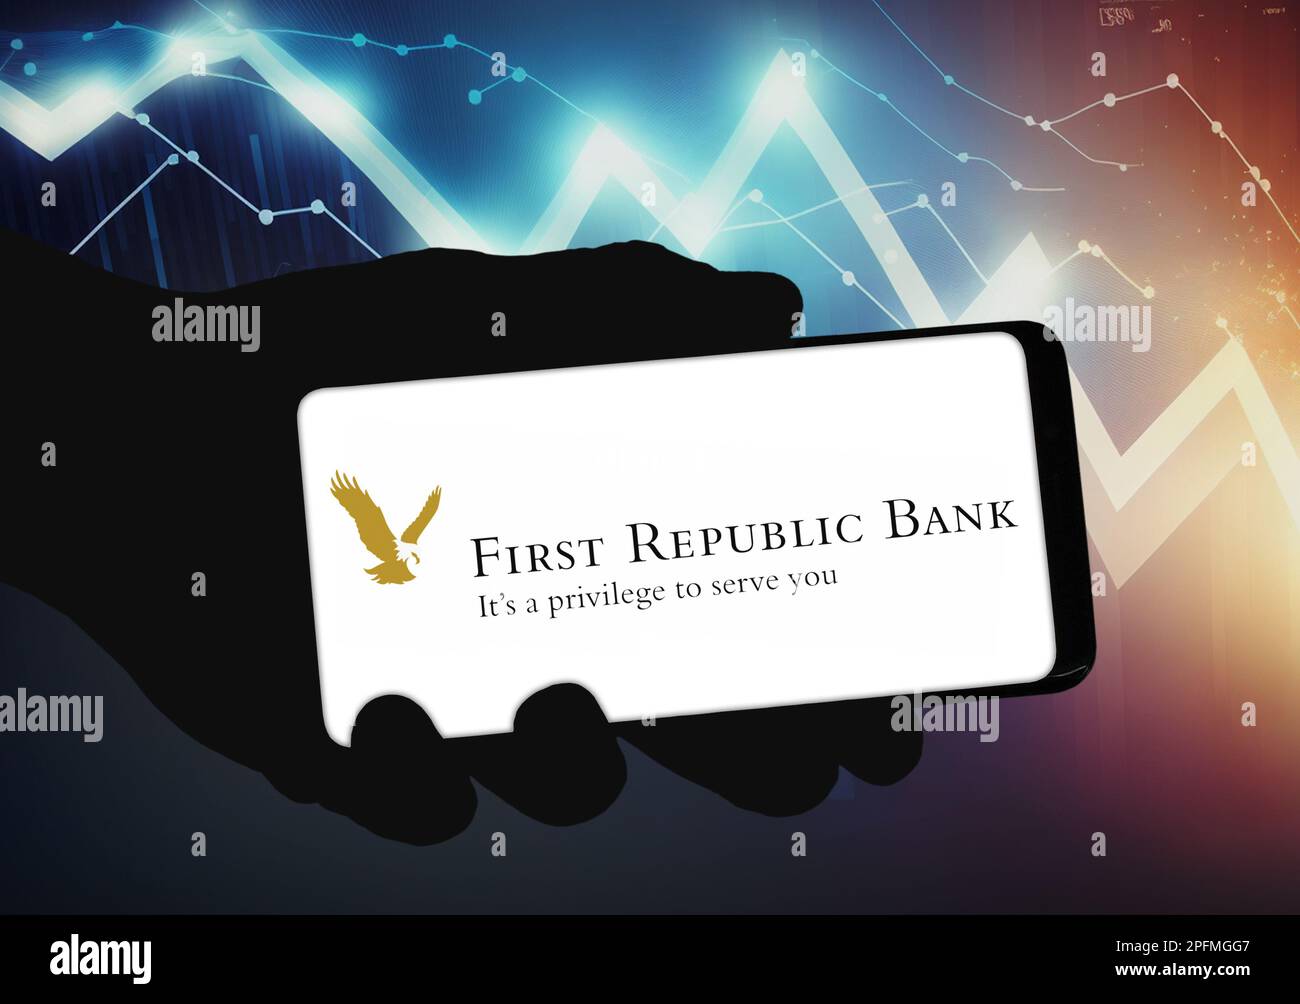 First Republic Bank - aplicación para smartphone Foto de stock